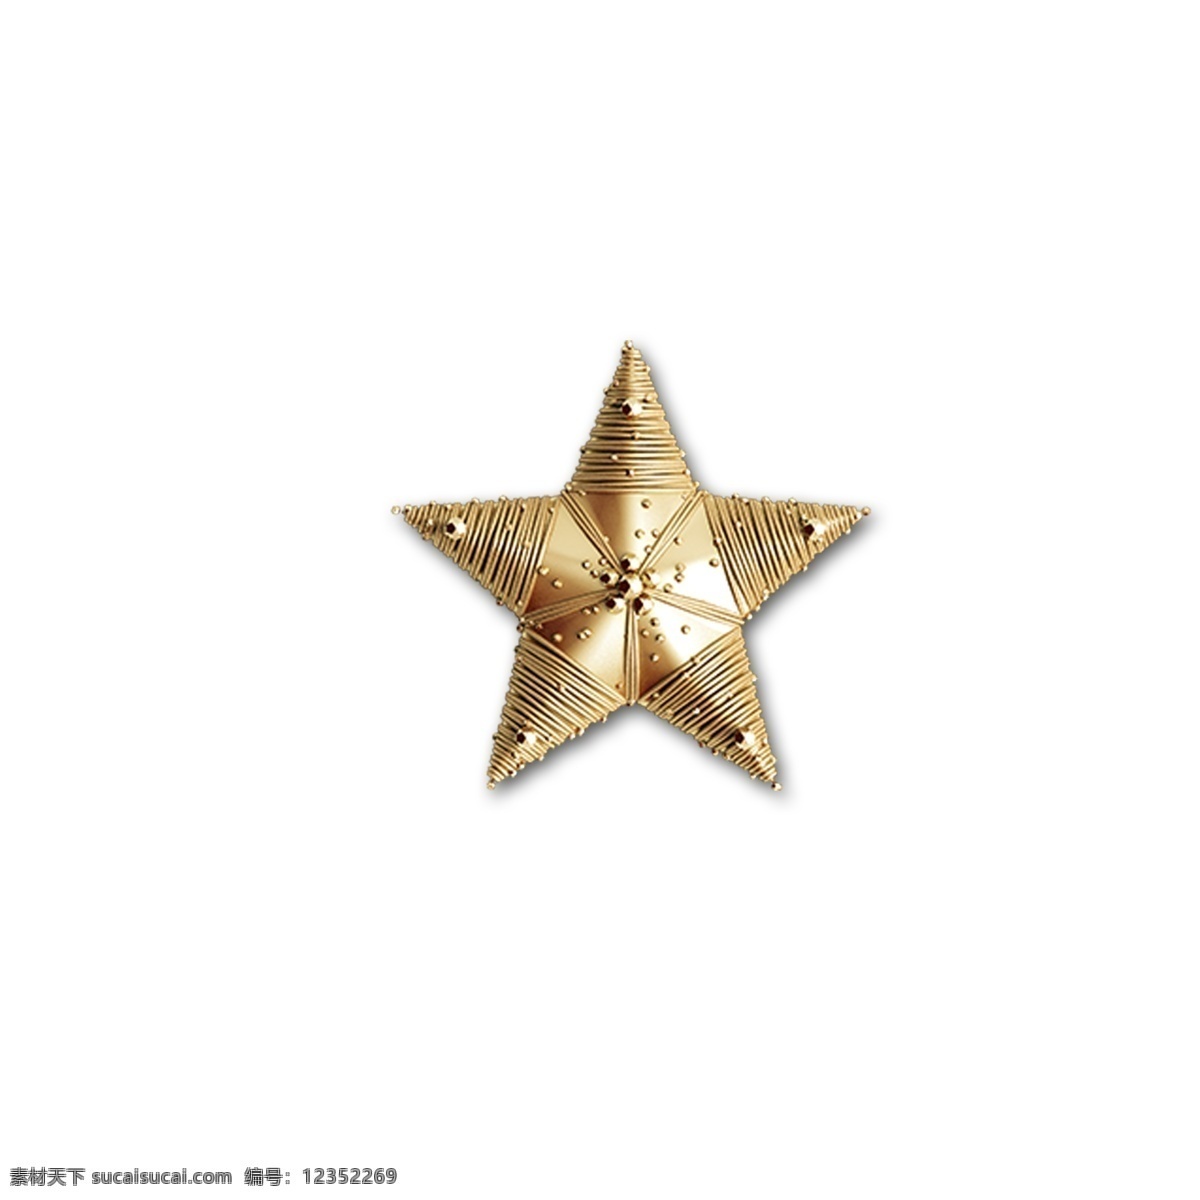 金色 五角星 图案 星星 装饰